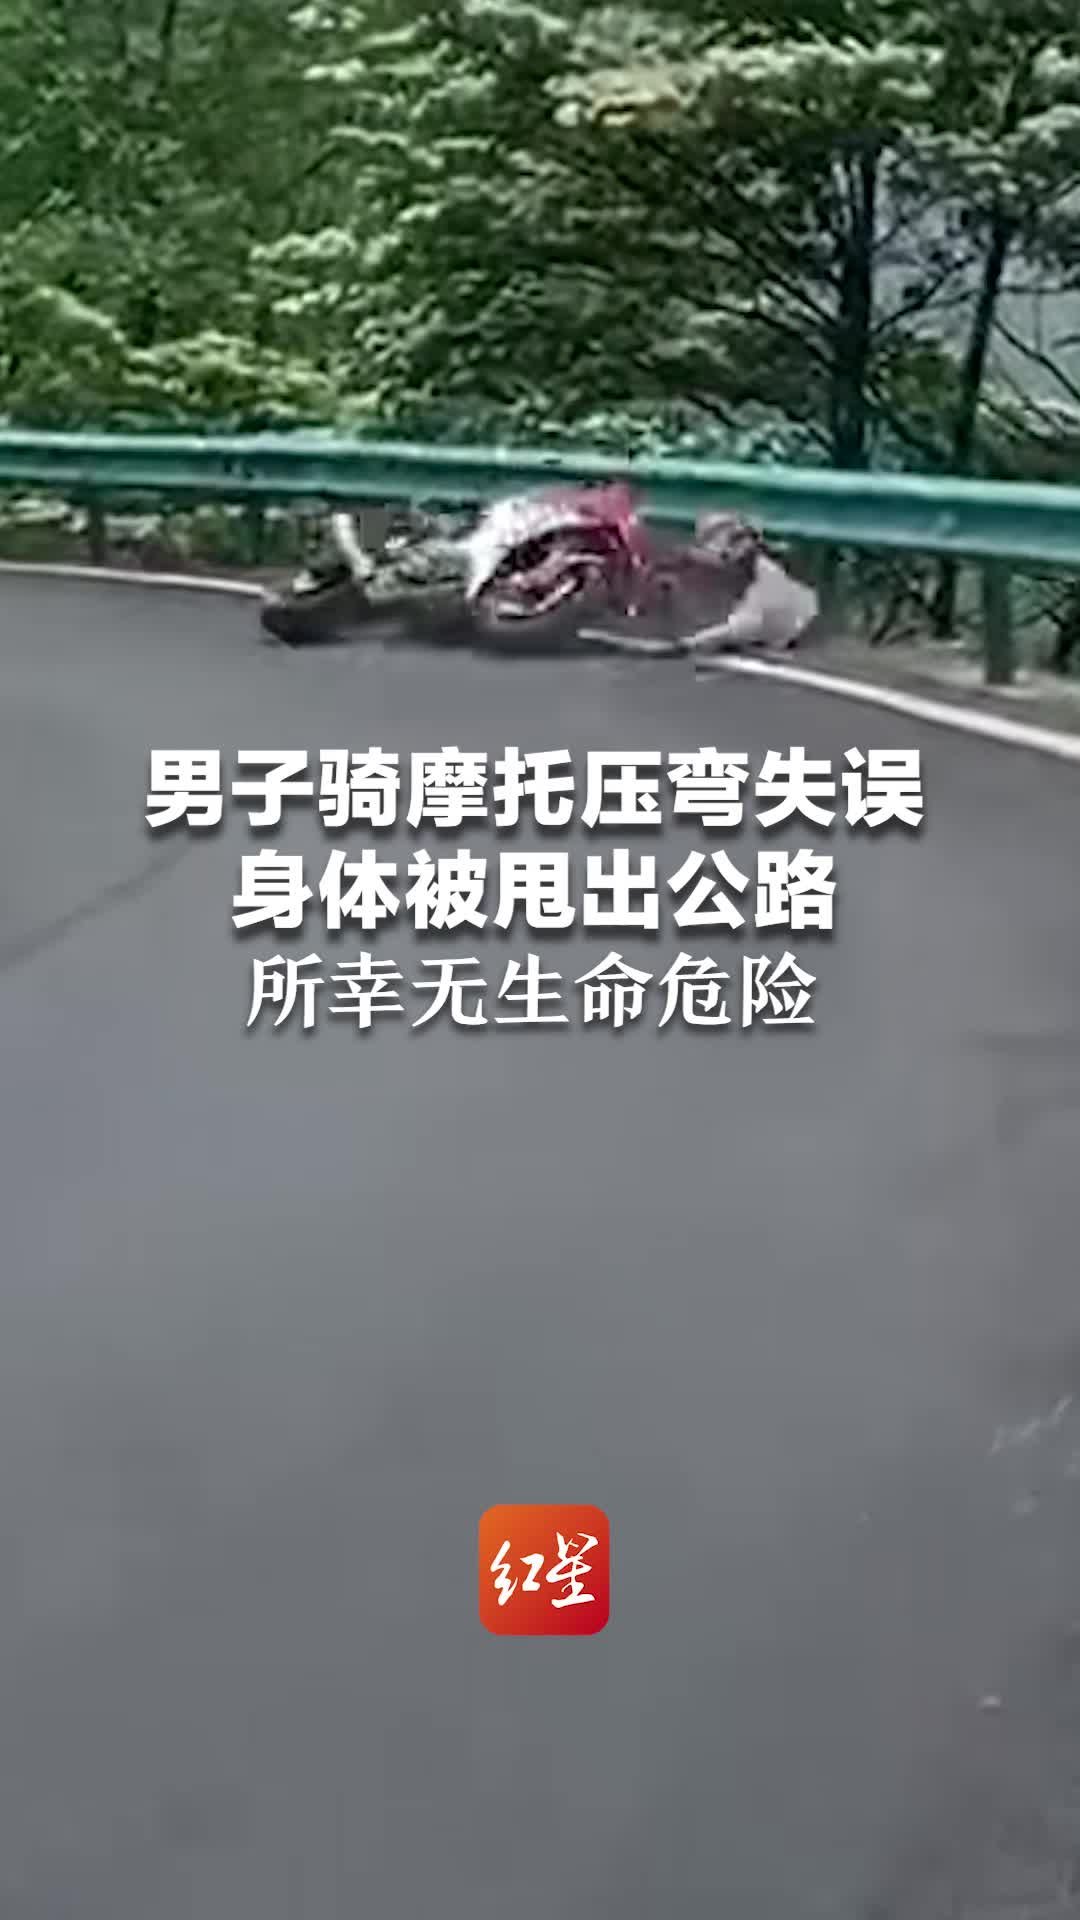 女子骑摩托不小心摔伤 绕城交警及时送医救治_韩宁